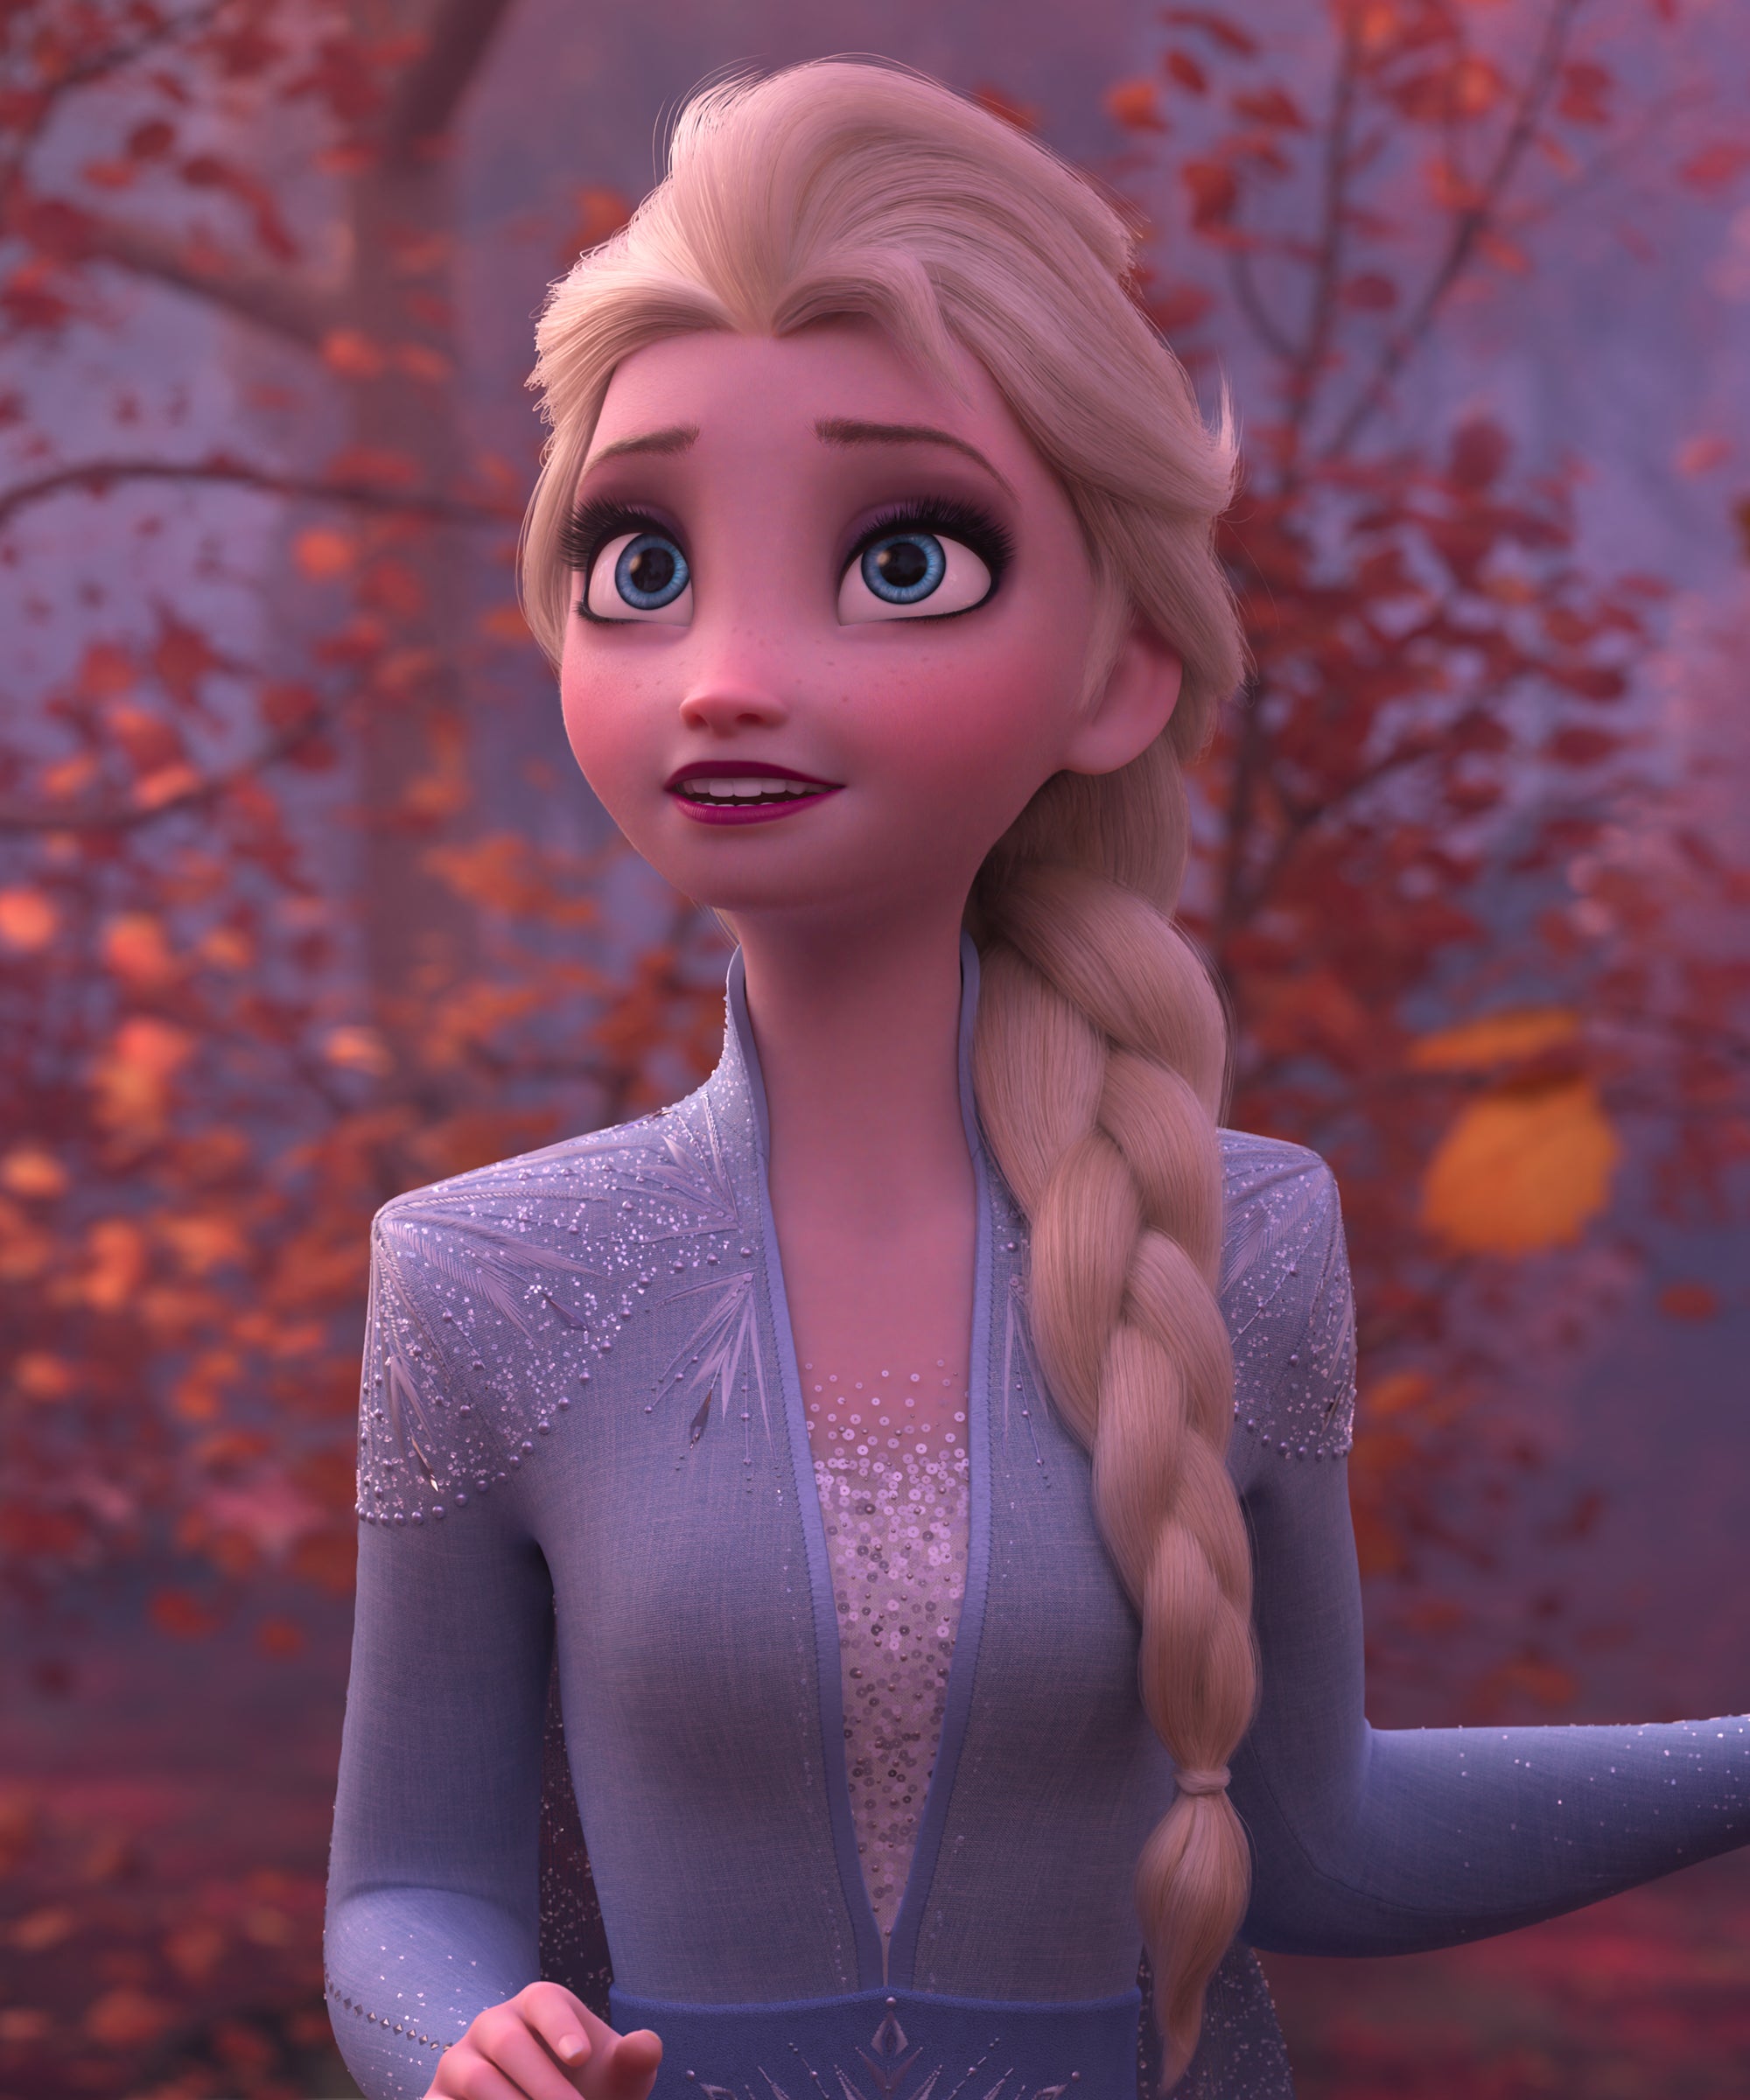 Misbruik Factureerbaar Bijdragen Is Elsa's Girlfriend In Frozen II? Director Explains